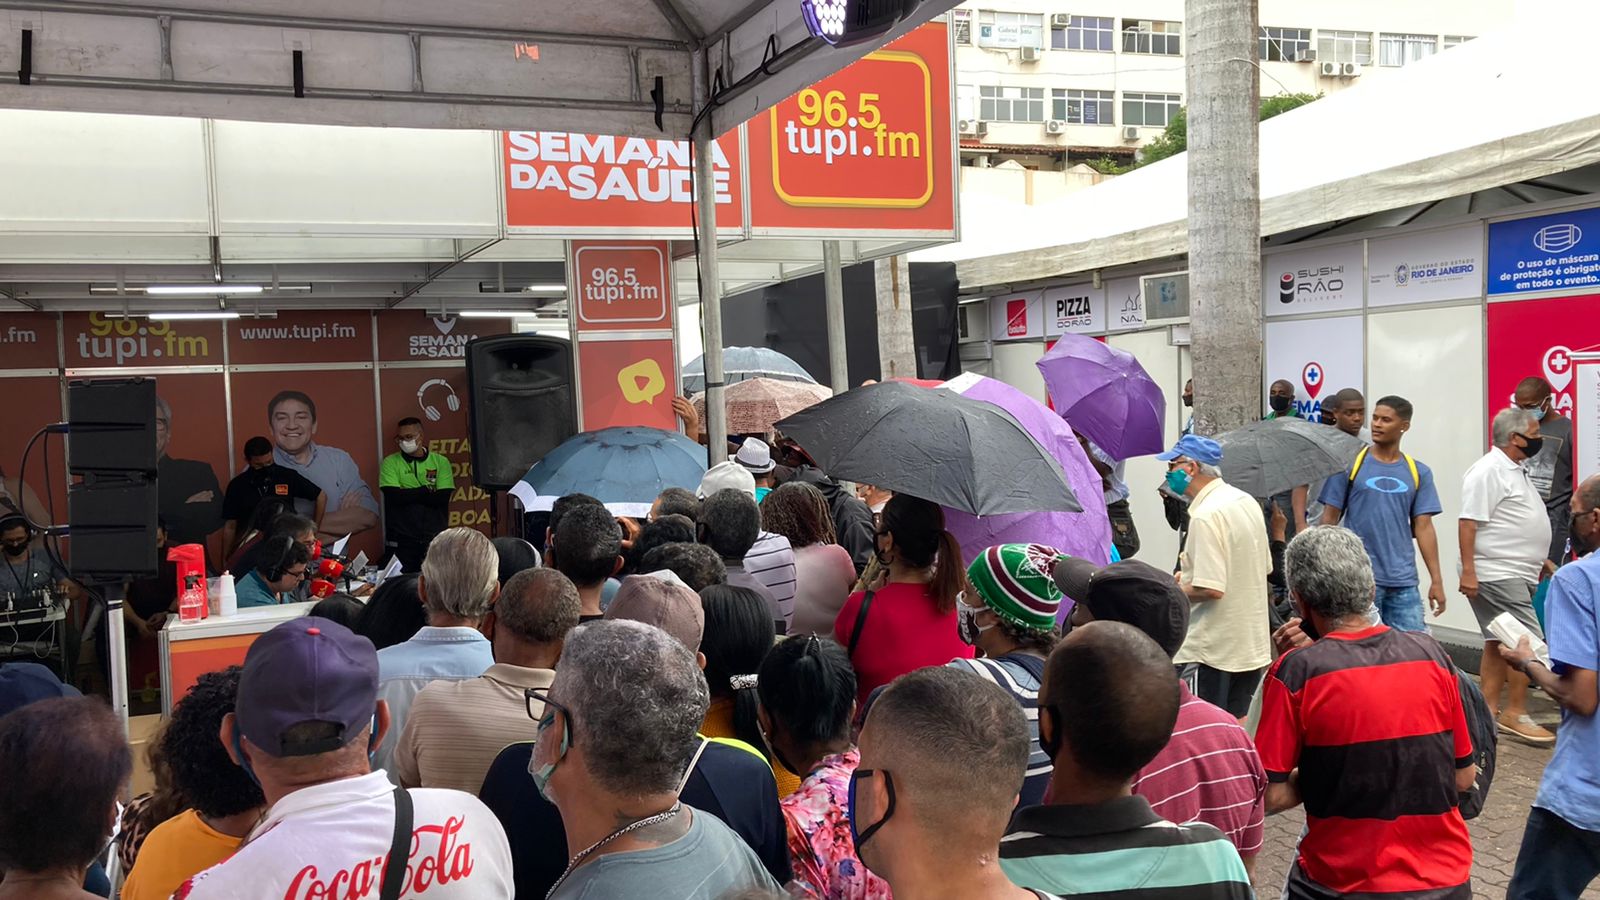 Galera de guarda-chuva acompanhando a "Patrulha da Cidade"